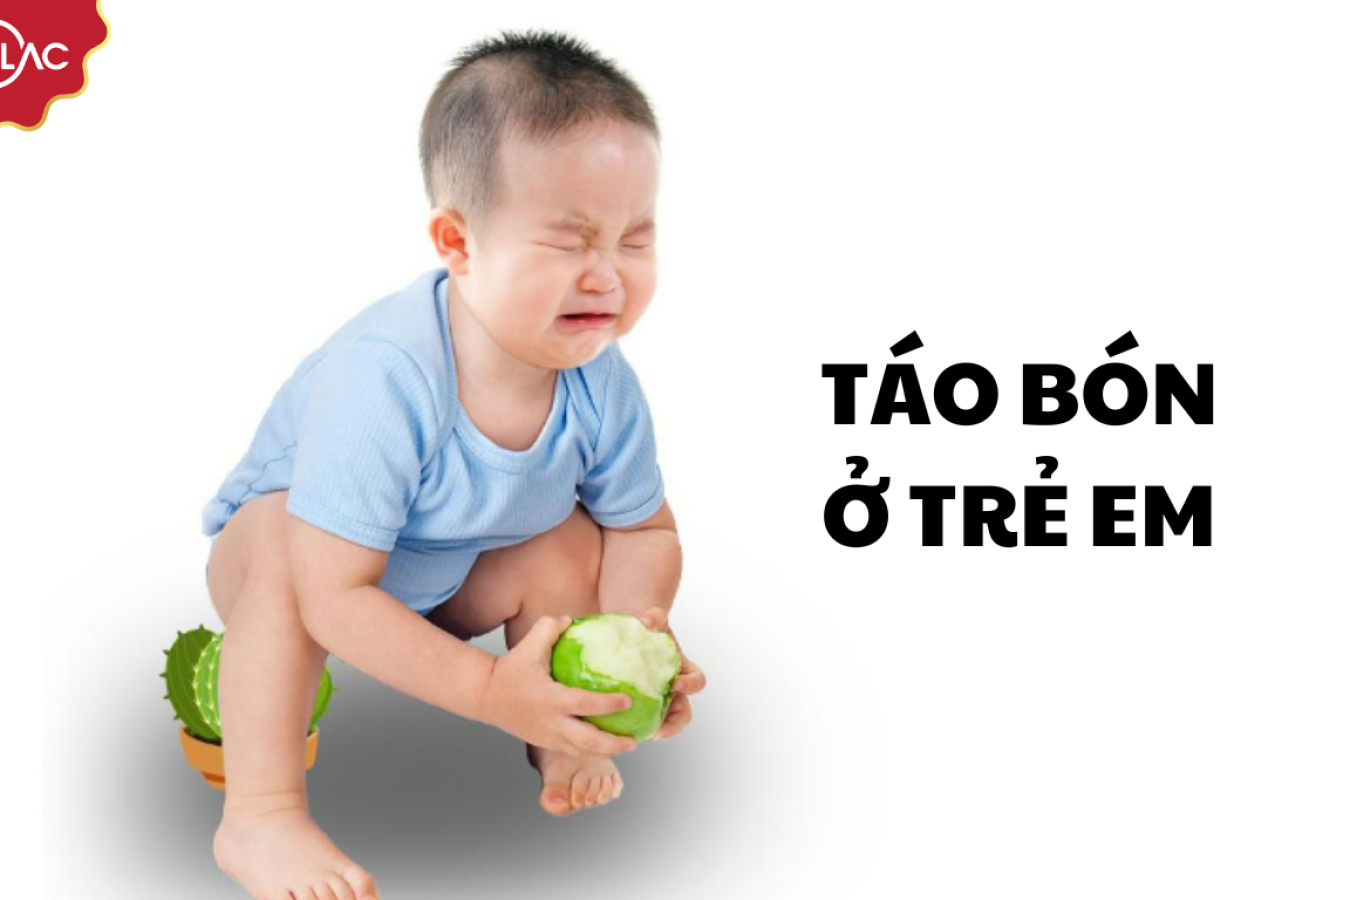 Cách phòng ngừa táo bón ở trẻ em hiệu quả nhất